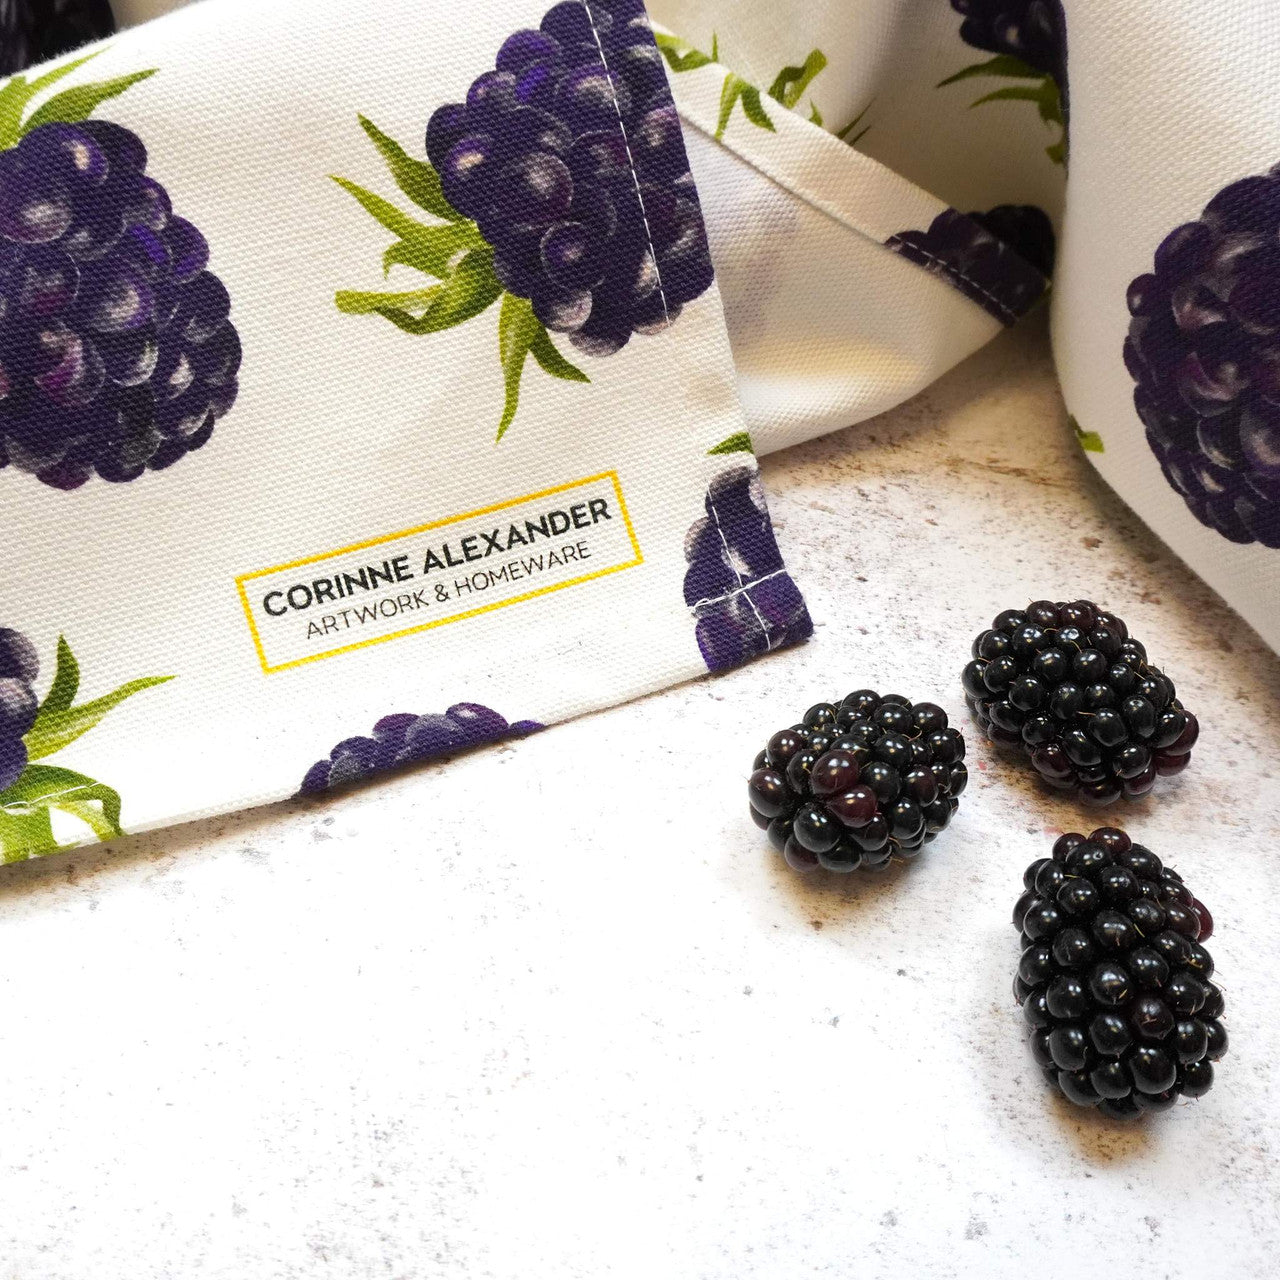 Blackberry Tea Towel by Corinne Alexander.